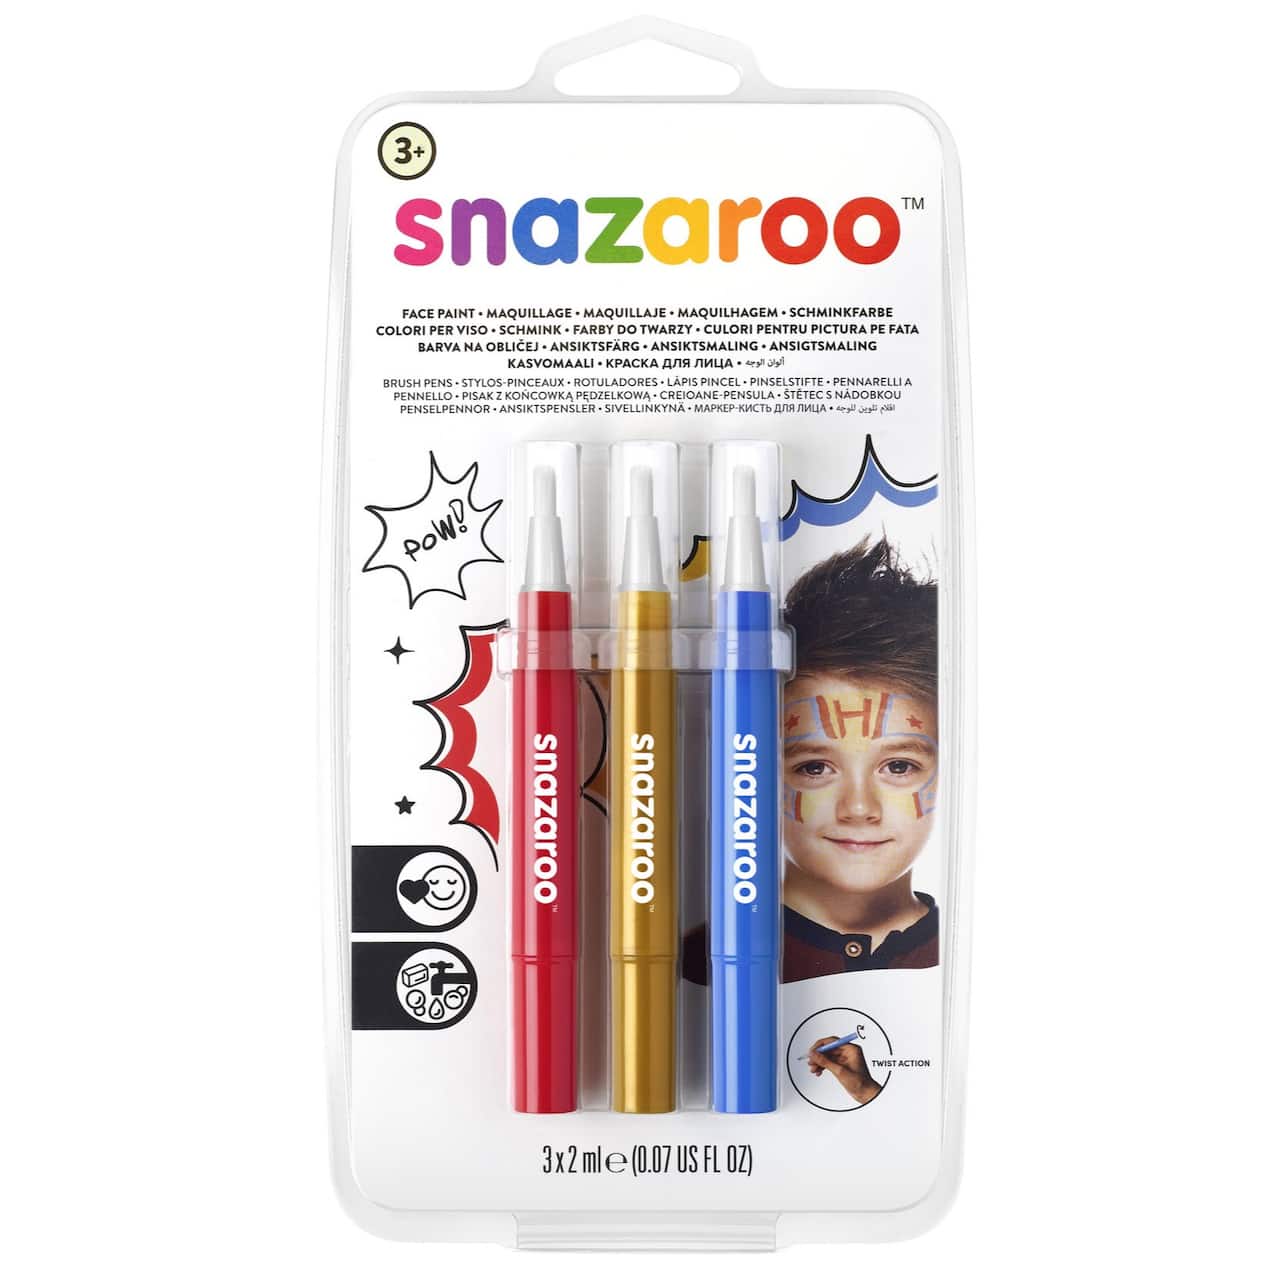 Snazaroo&#x2122; Face Paint Brush Pen Set, Adventure 